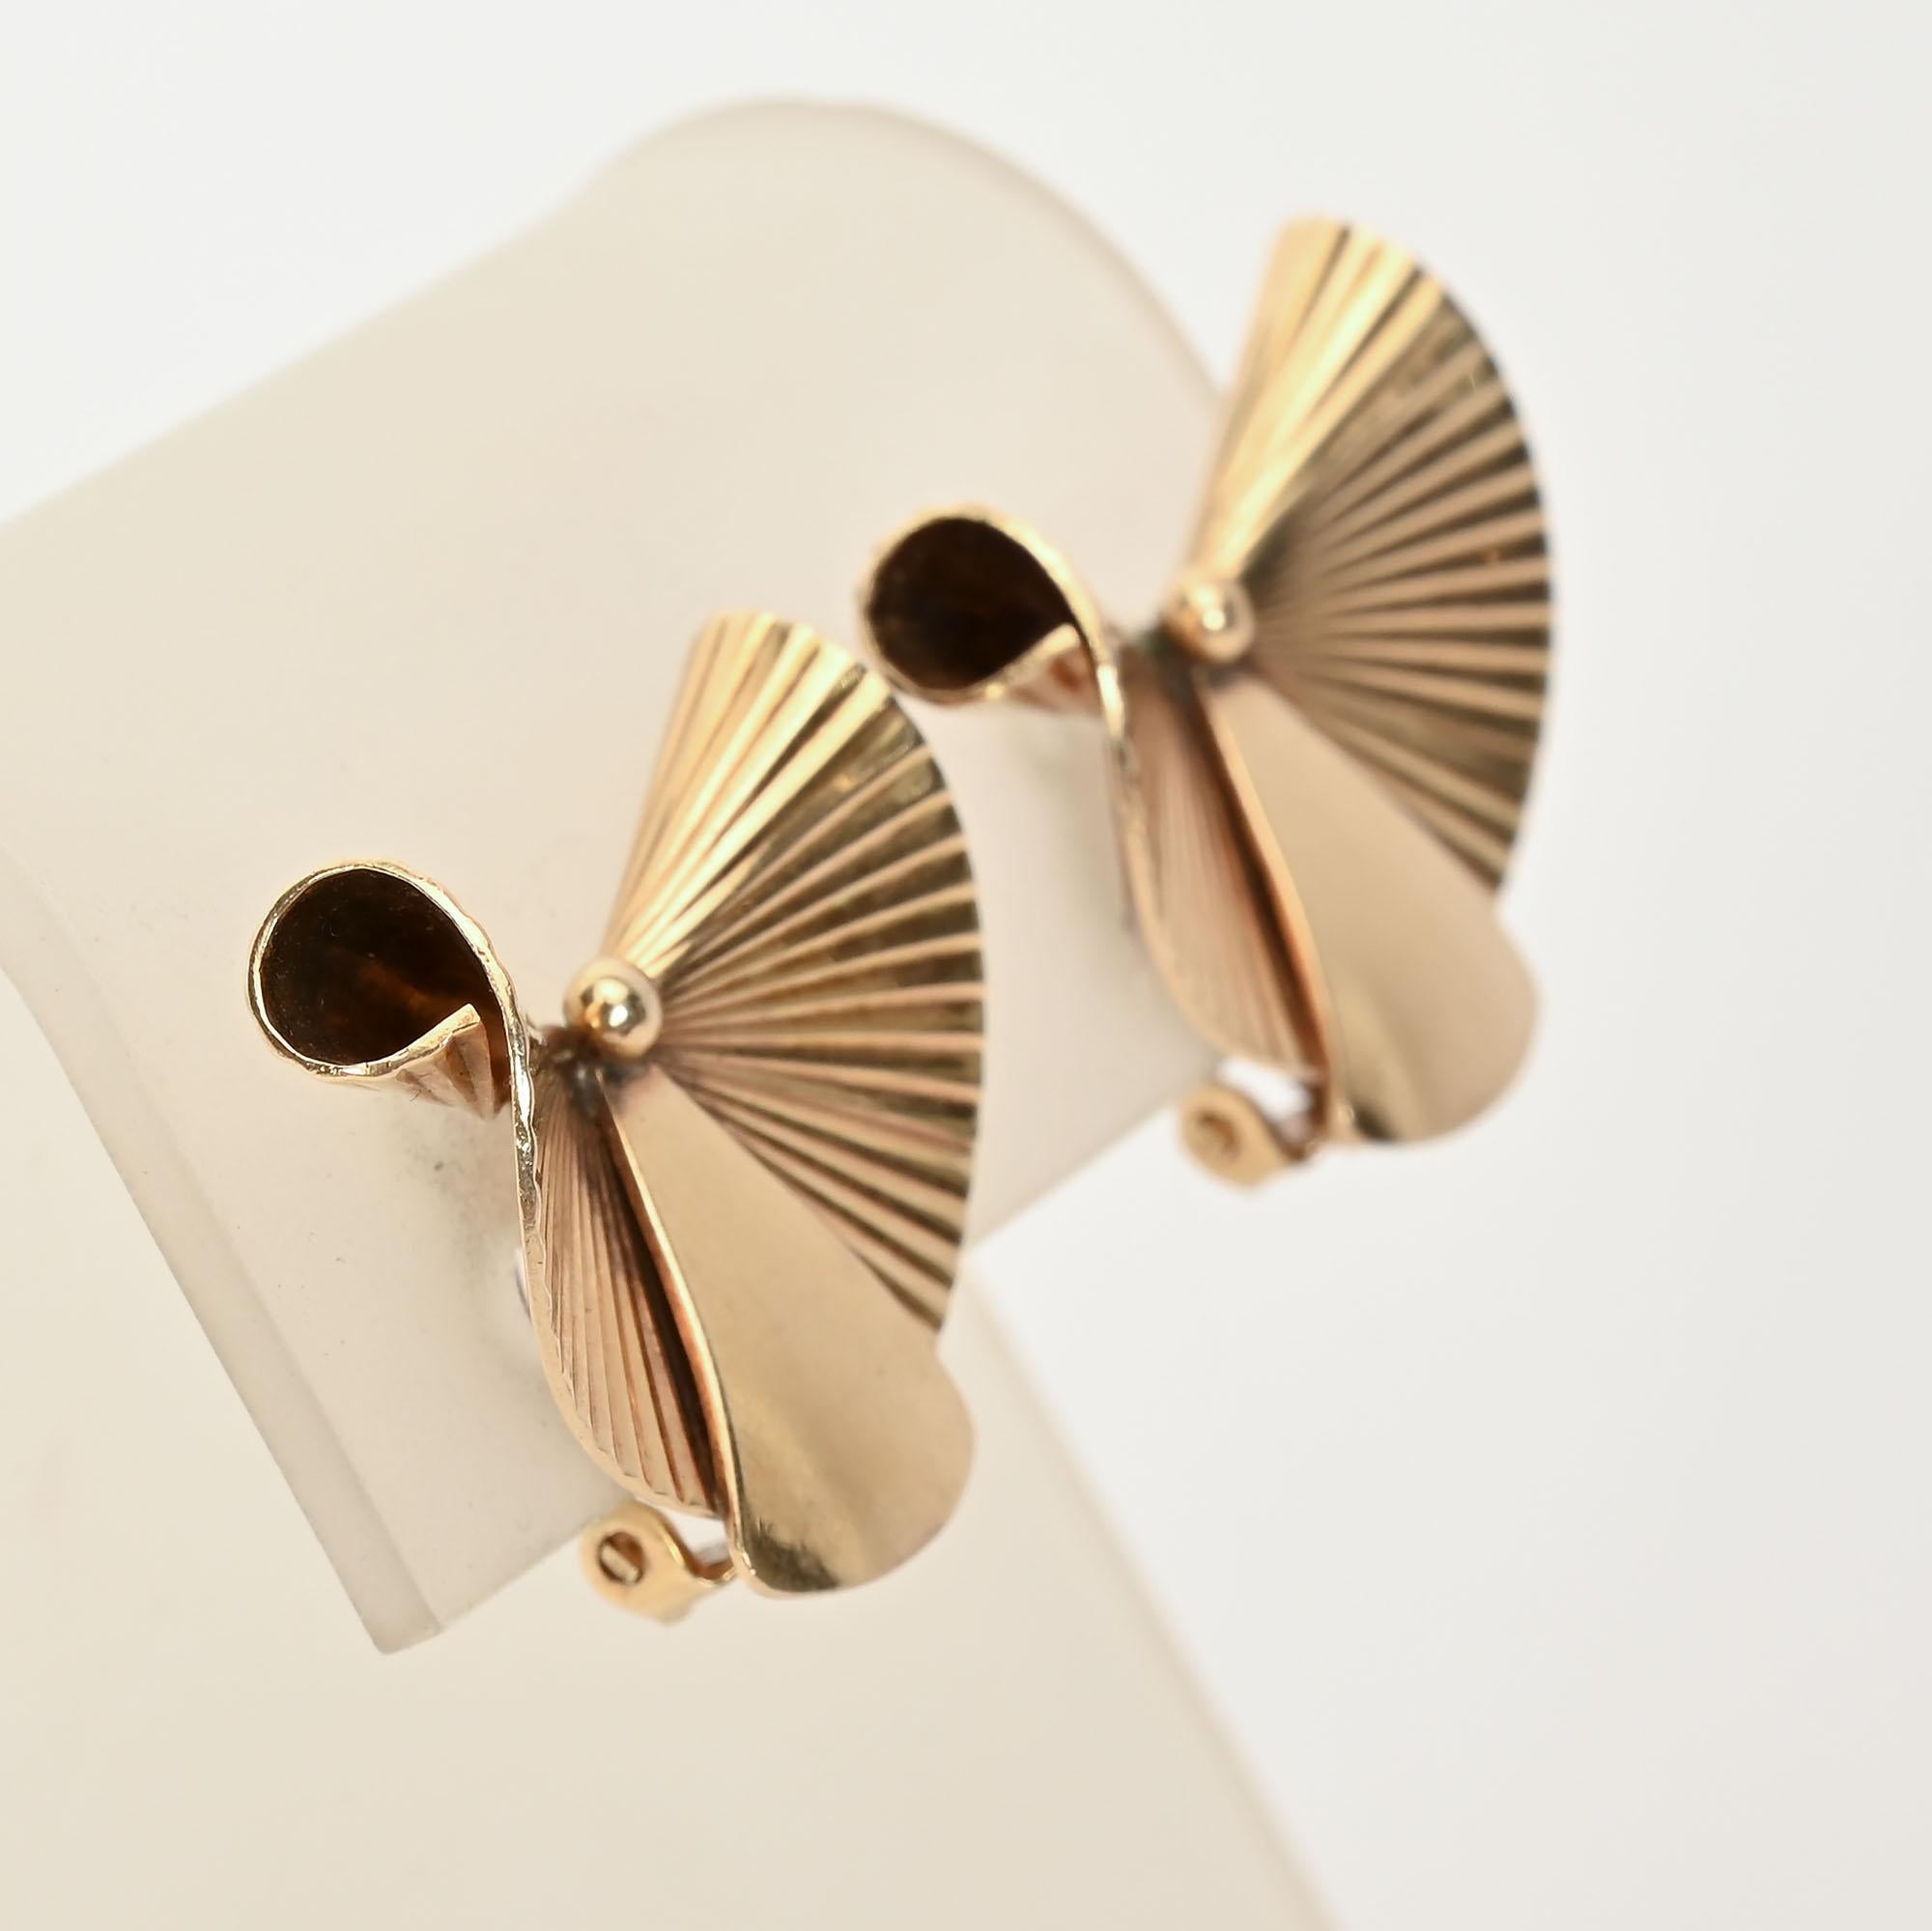 Ohrringe aus vierzehn Karat Gold, die ganz im Zeichen des Retro-Designs stehen. Messen Sie 1